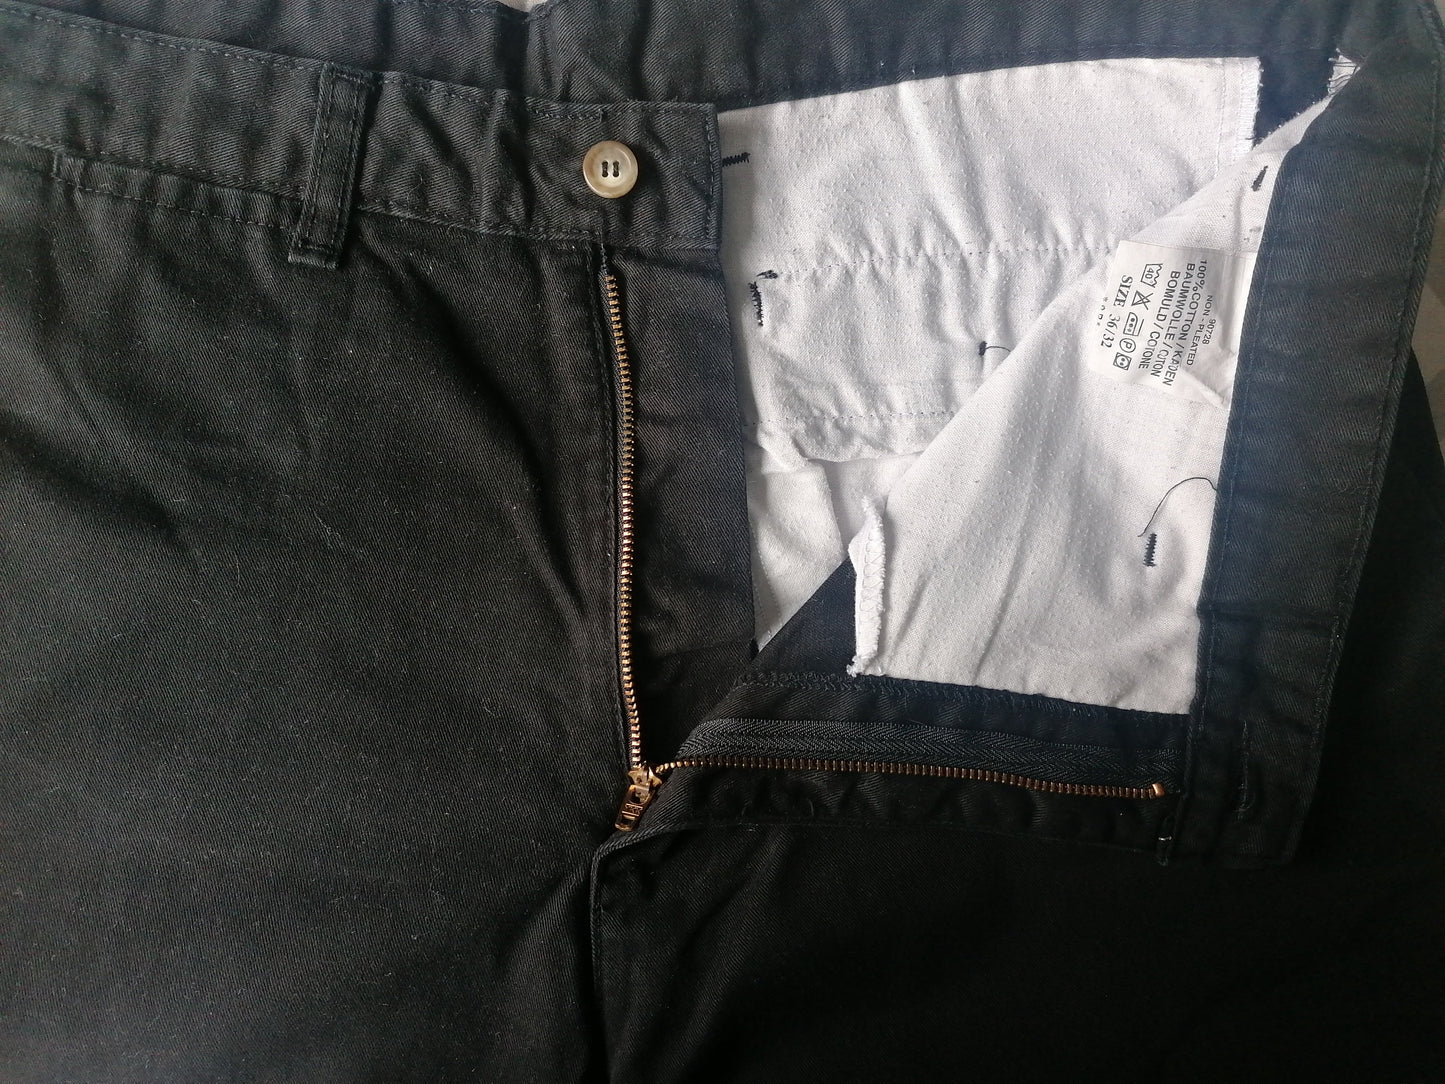 Jeans maverick. Colore nero. Taglia W36 - L32. A vita alta!!